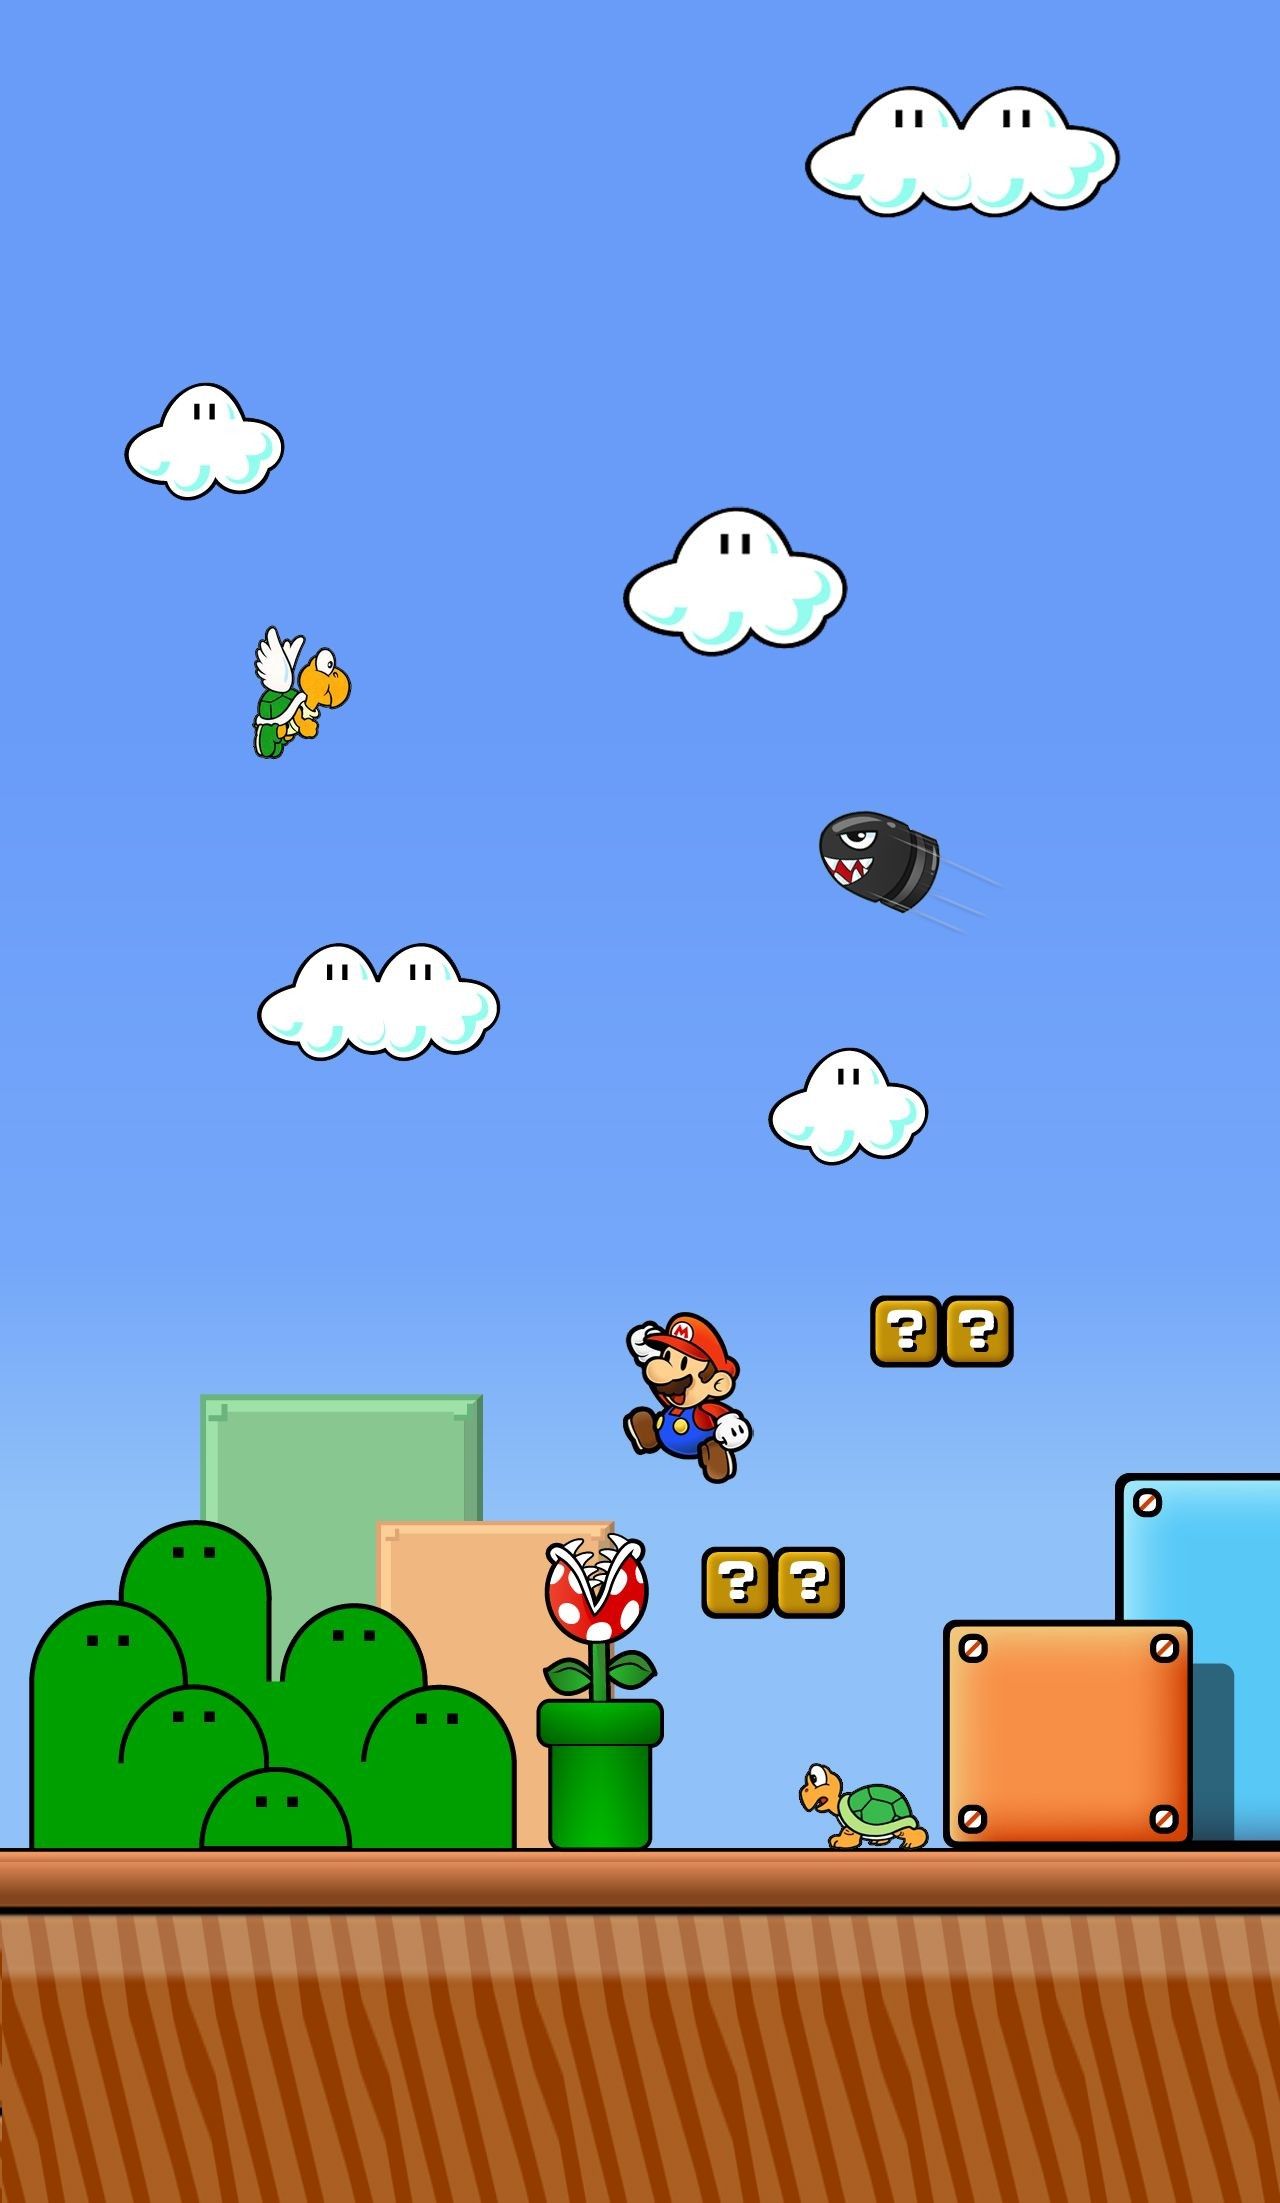 8 Bit Mario IPhone Wallpaper